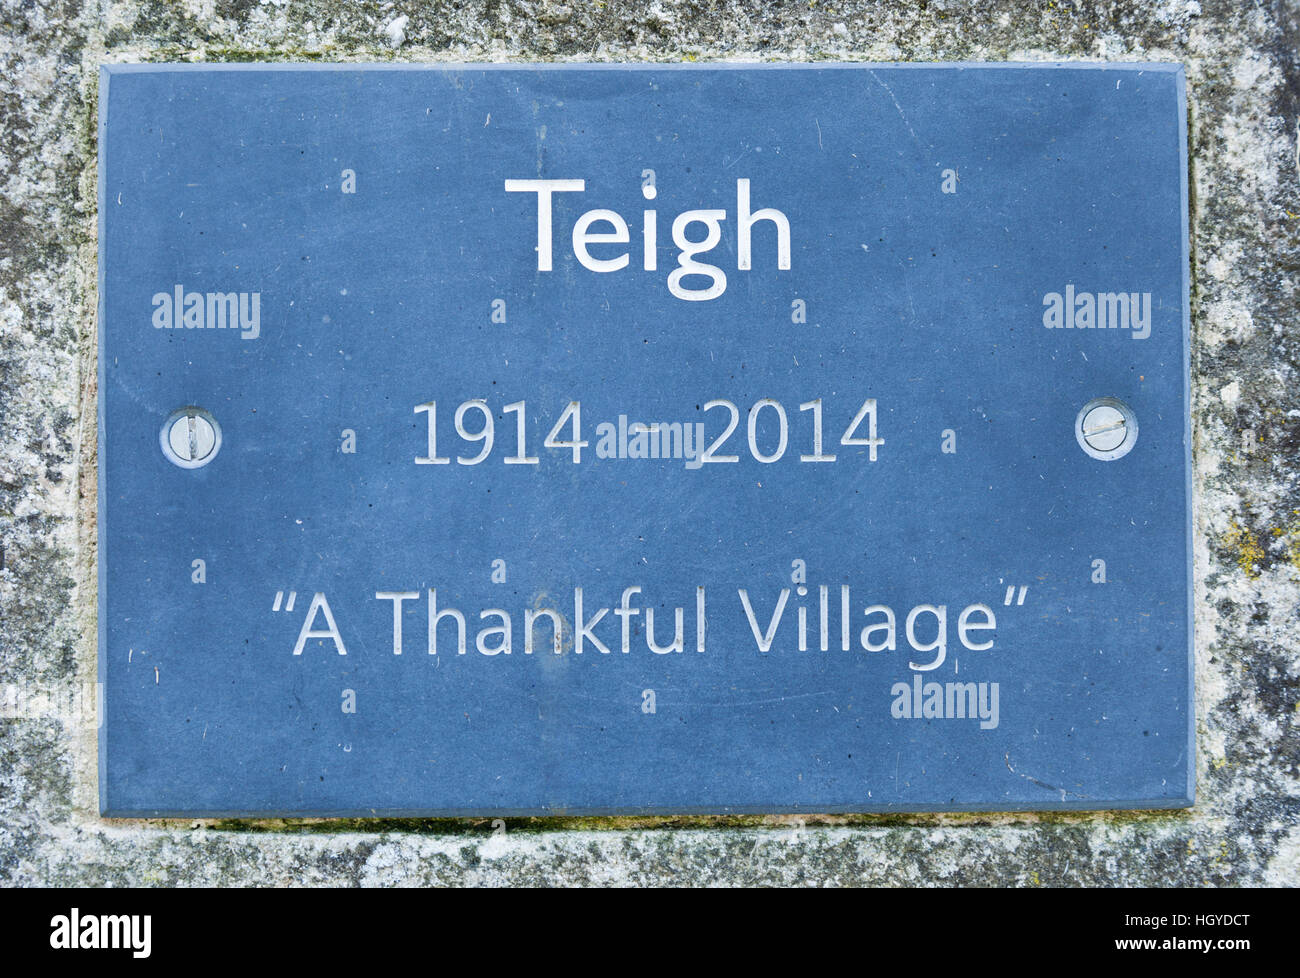 Une plaque dans le village de Teigh, Rutland, en Angleterre, commémorant 100 ans comme "village reconnaissant" de 1914 à 2014. Banque D'Images